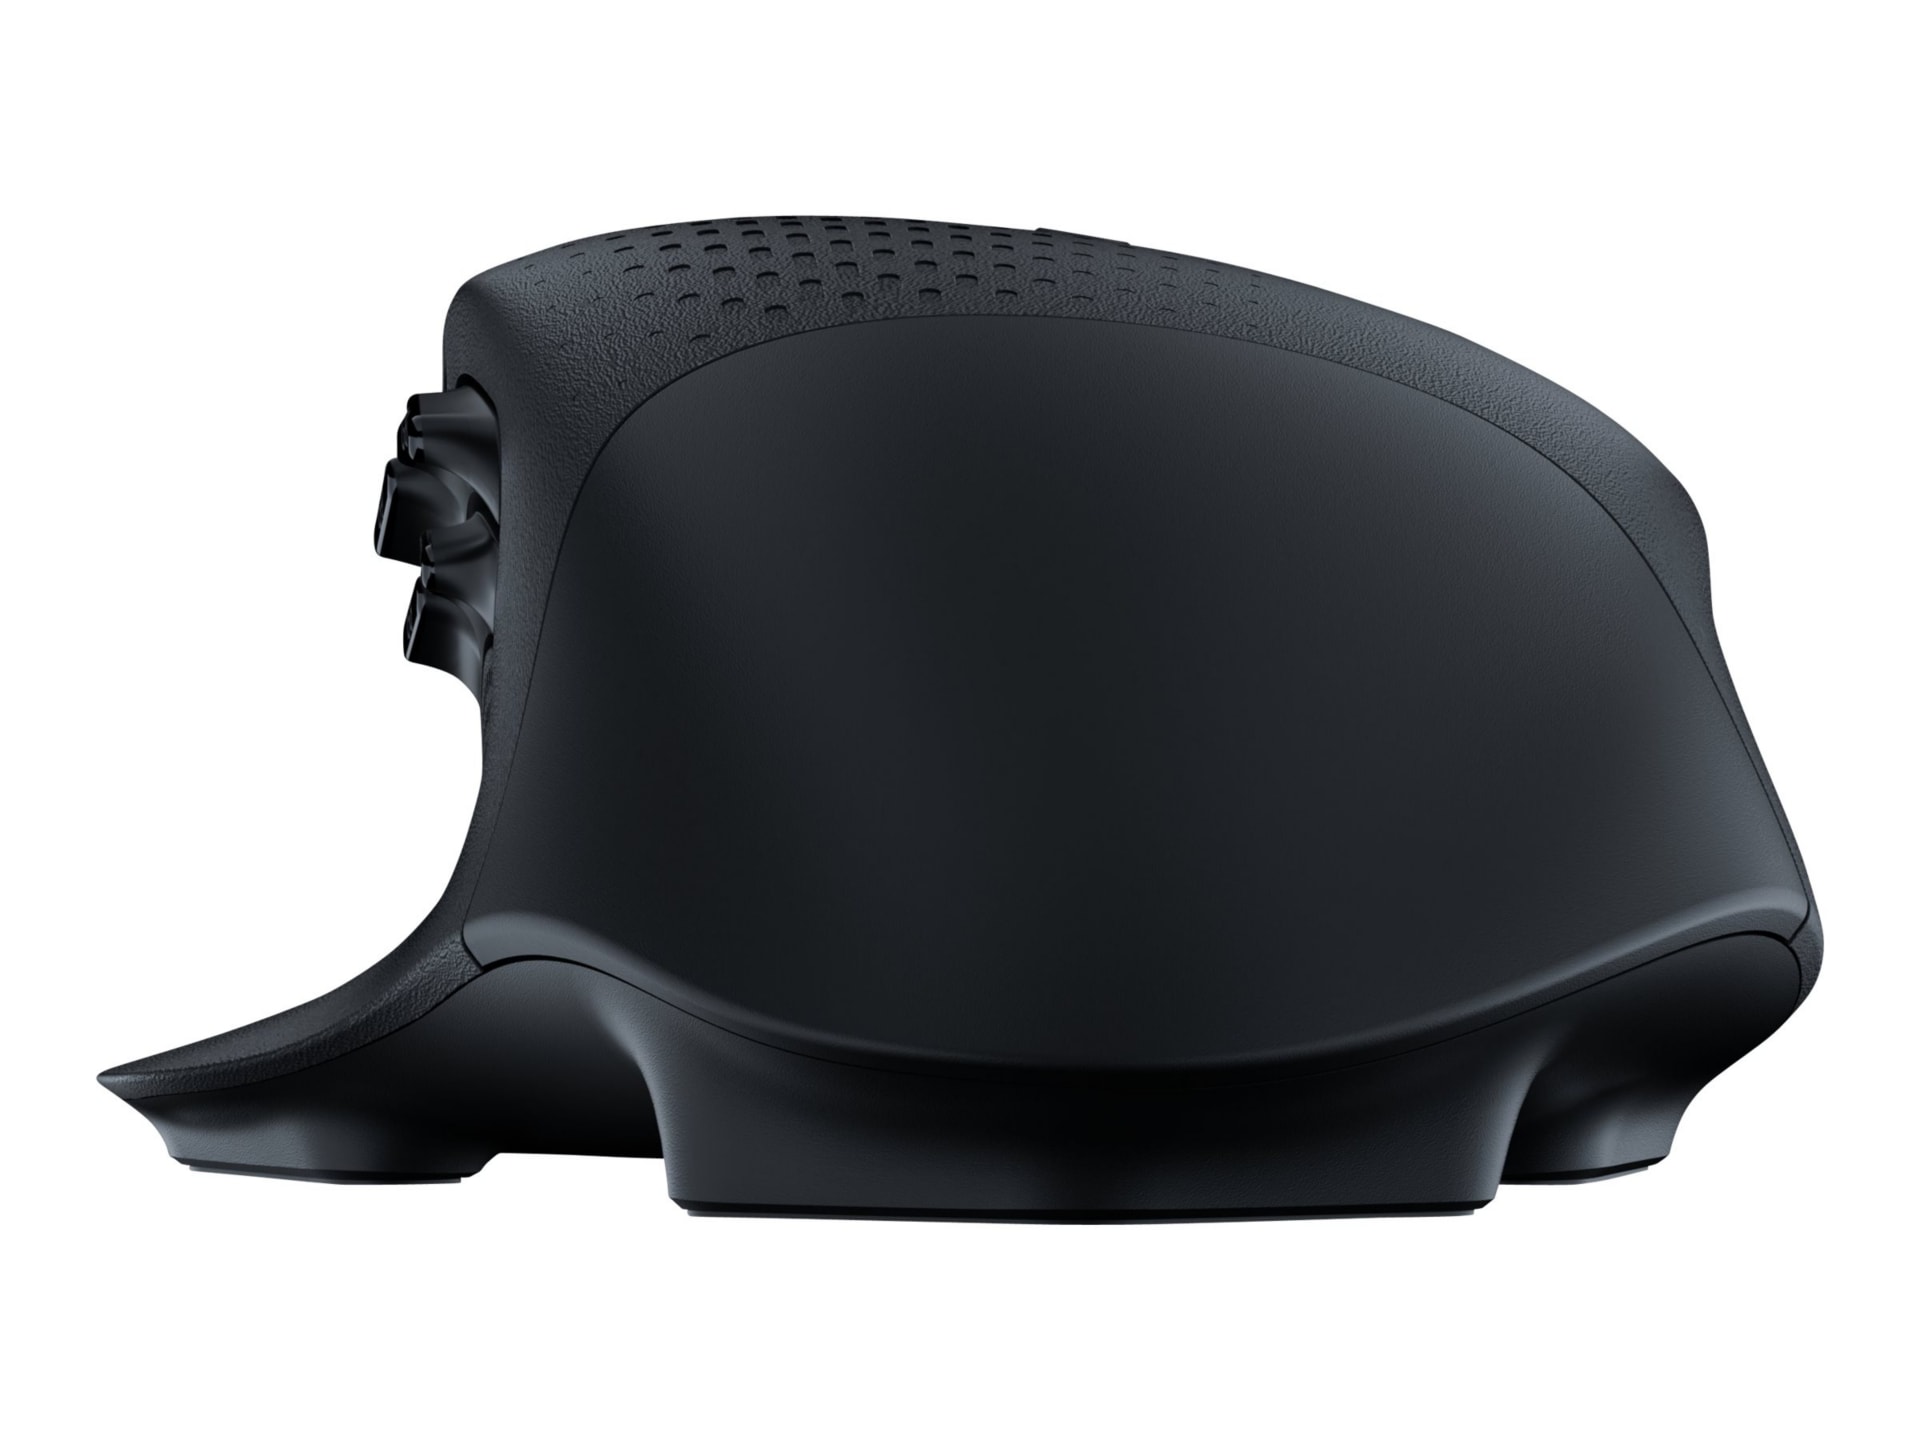 Logitech G604 LIGHTSPEED Wireless Gaming Mouse - souris - Bluetooth, 2.4 GHz